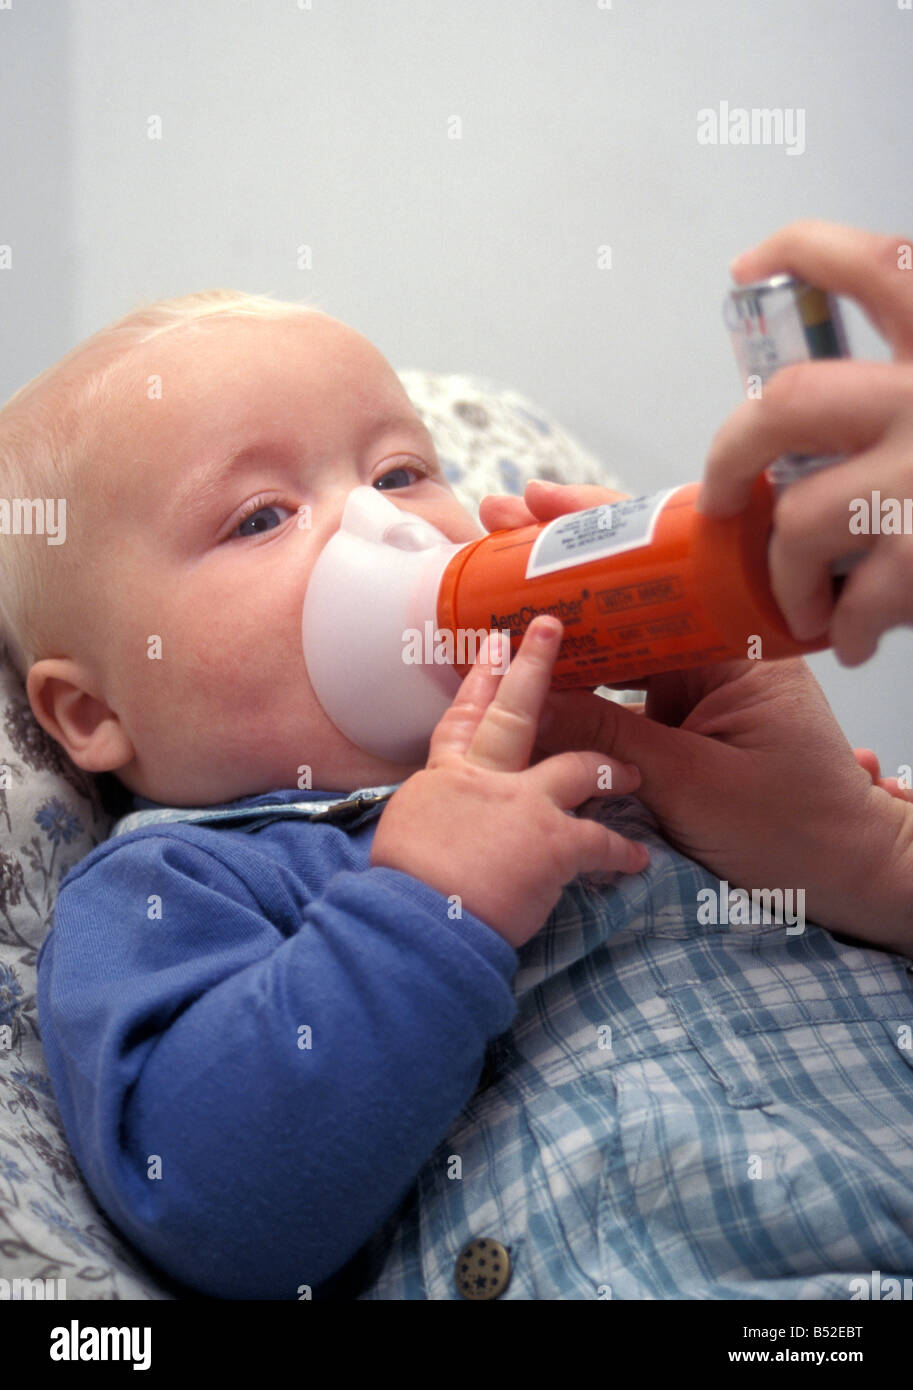 Petit bébé nébuliseur sur pour l'asthme Photo Stock - Alamy